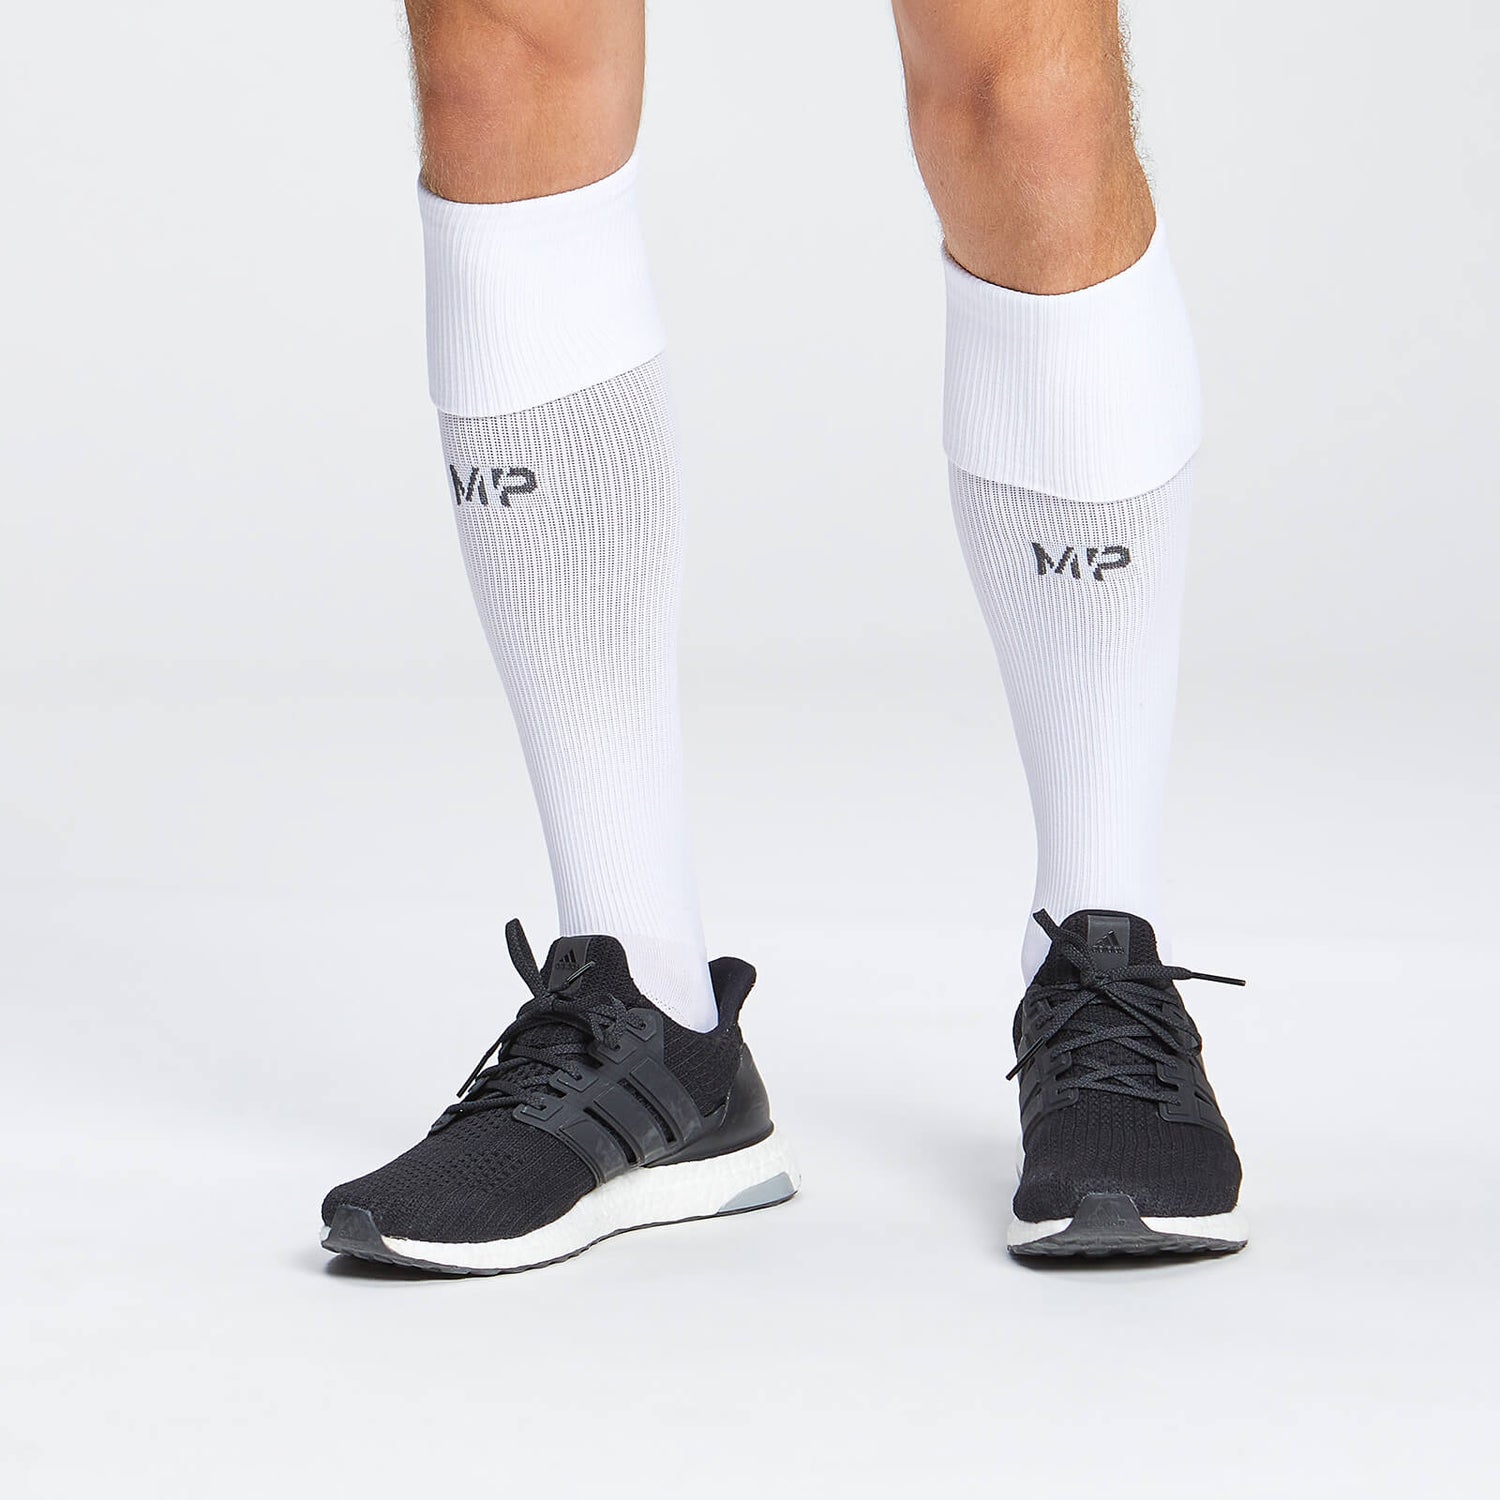 MP Prodloužené Fotbalové Ponožky – Bílé - UK 3-6